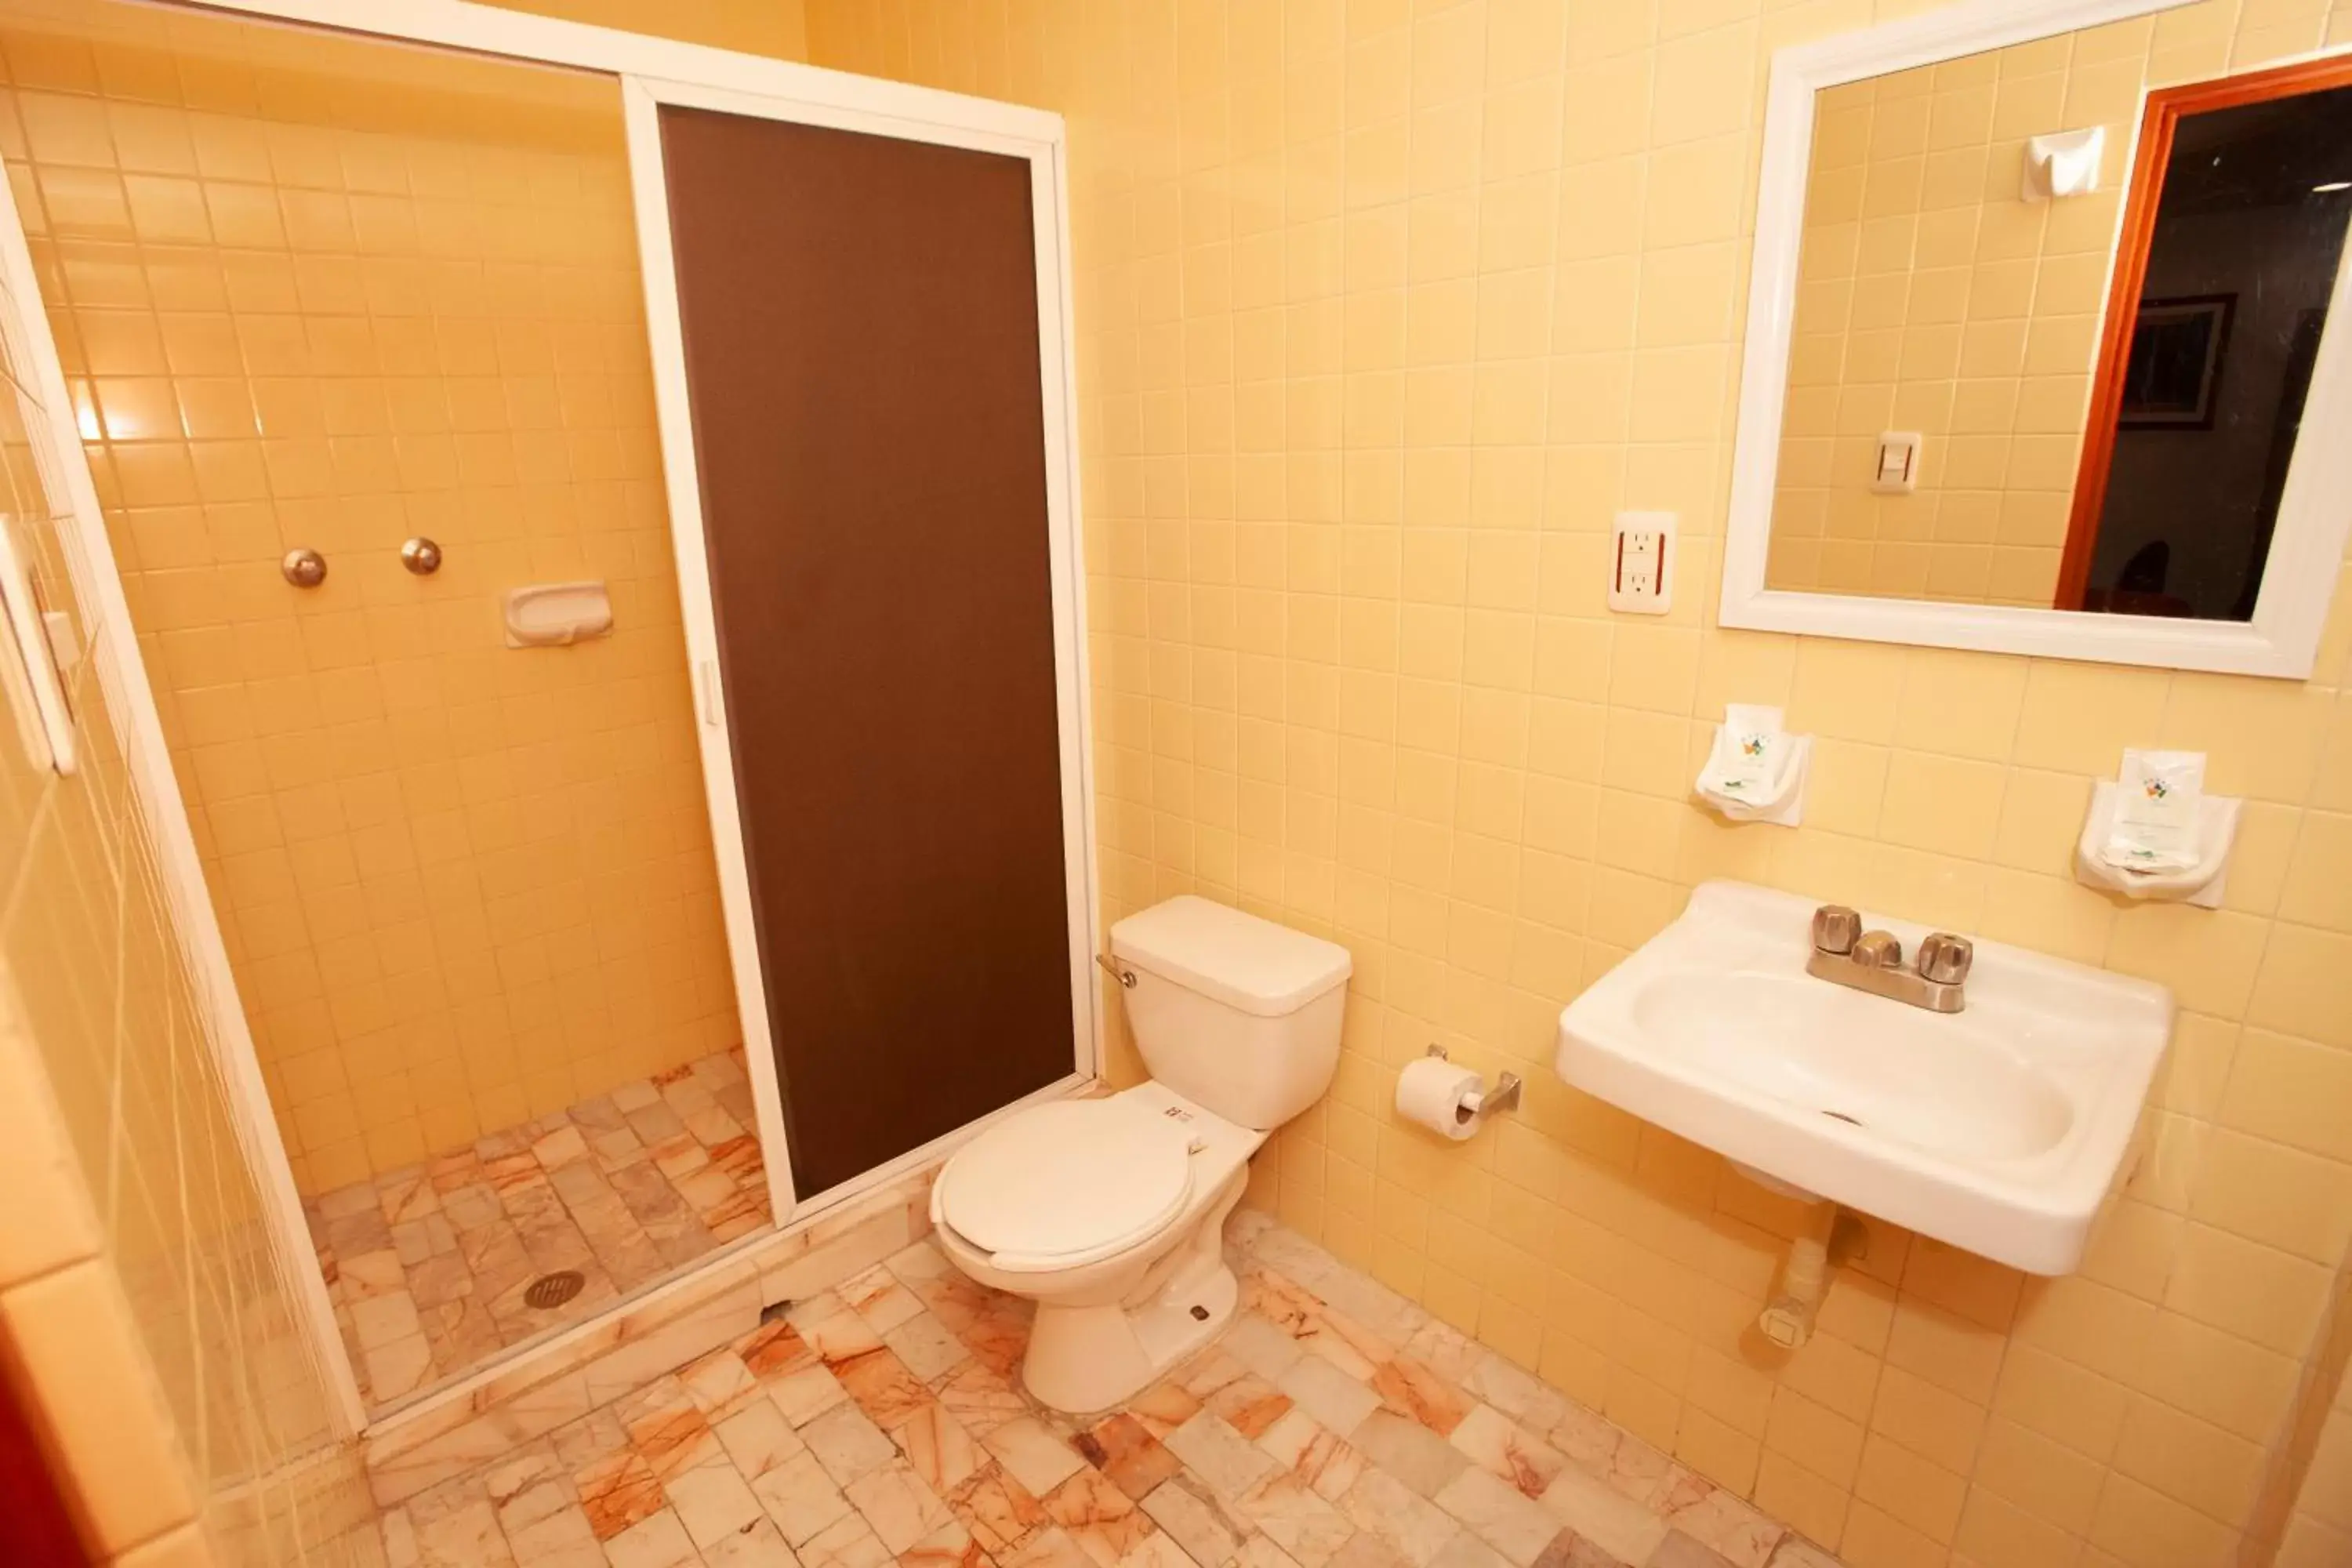 Bathroom in Hotel Tres Colonias - Sólo Adultos